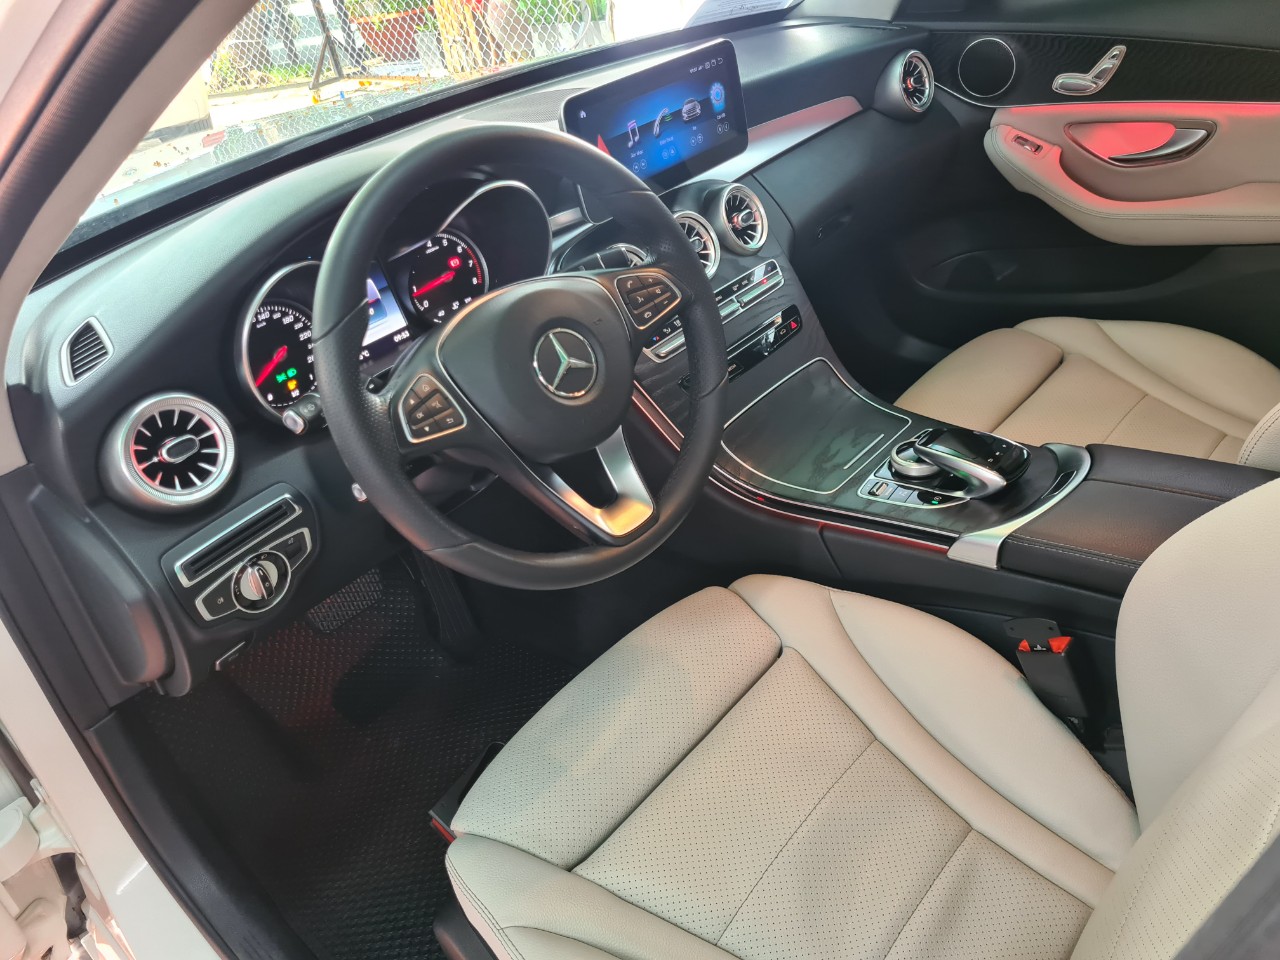 Mercedes-Benz C200 2016 - Mercedes-Benz C200 cũ 2016, Trắng NT Kem, xe đẹp giá tốt